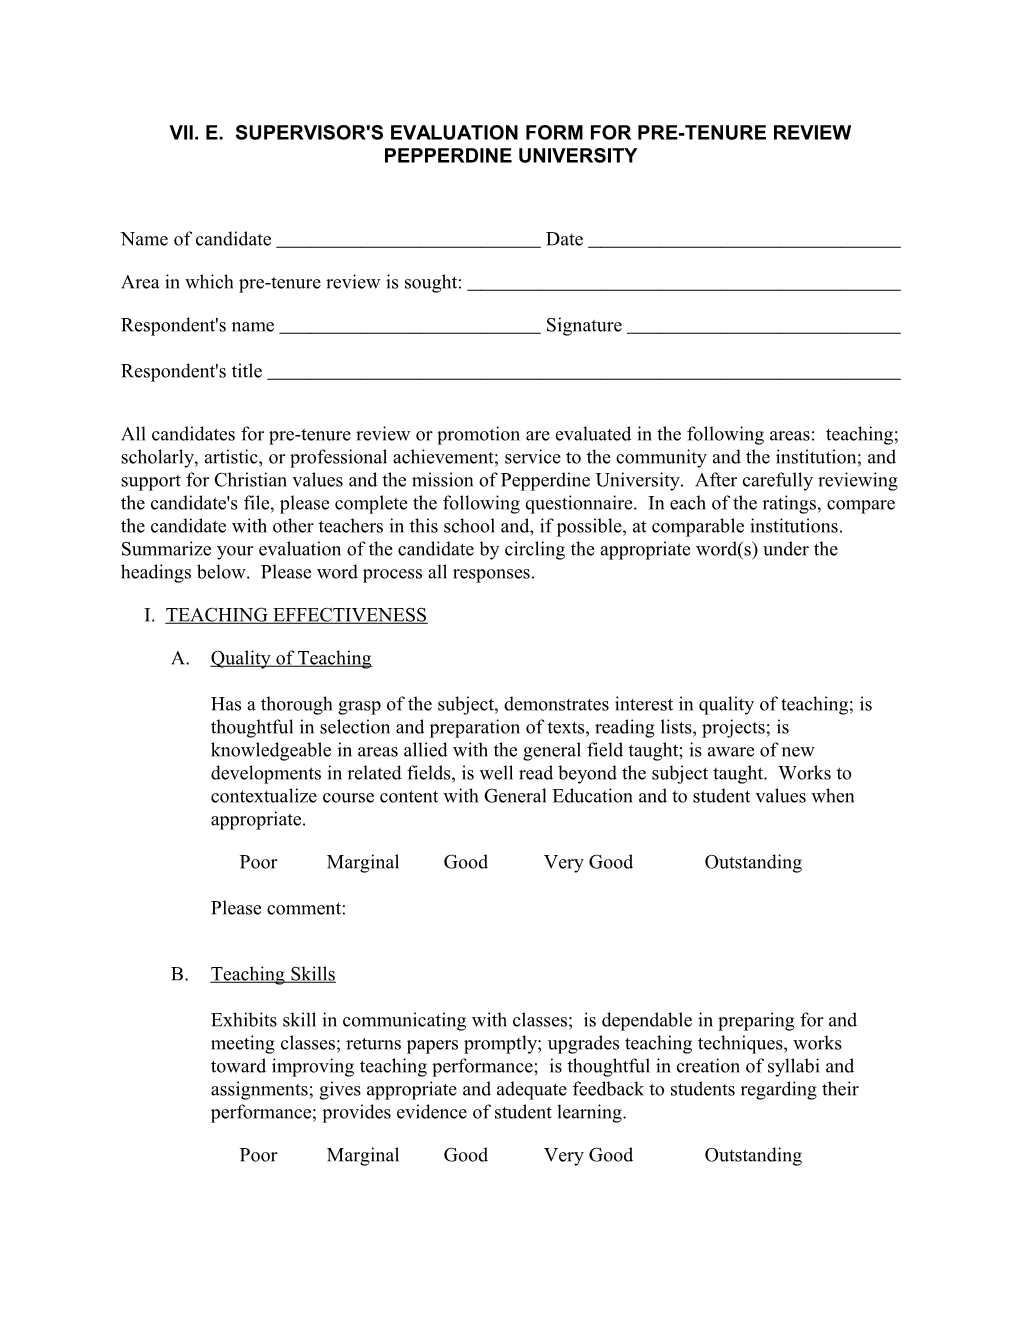 Vii. E. Supervisor's Evaluation Form for Pre-Tenure Review